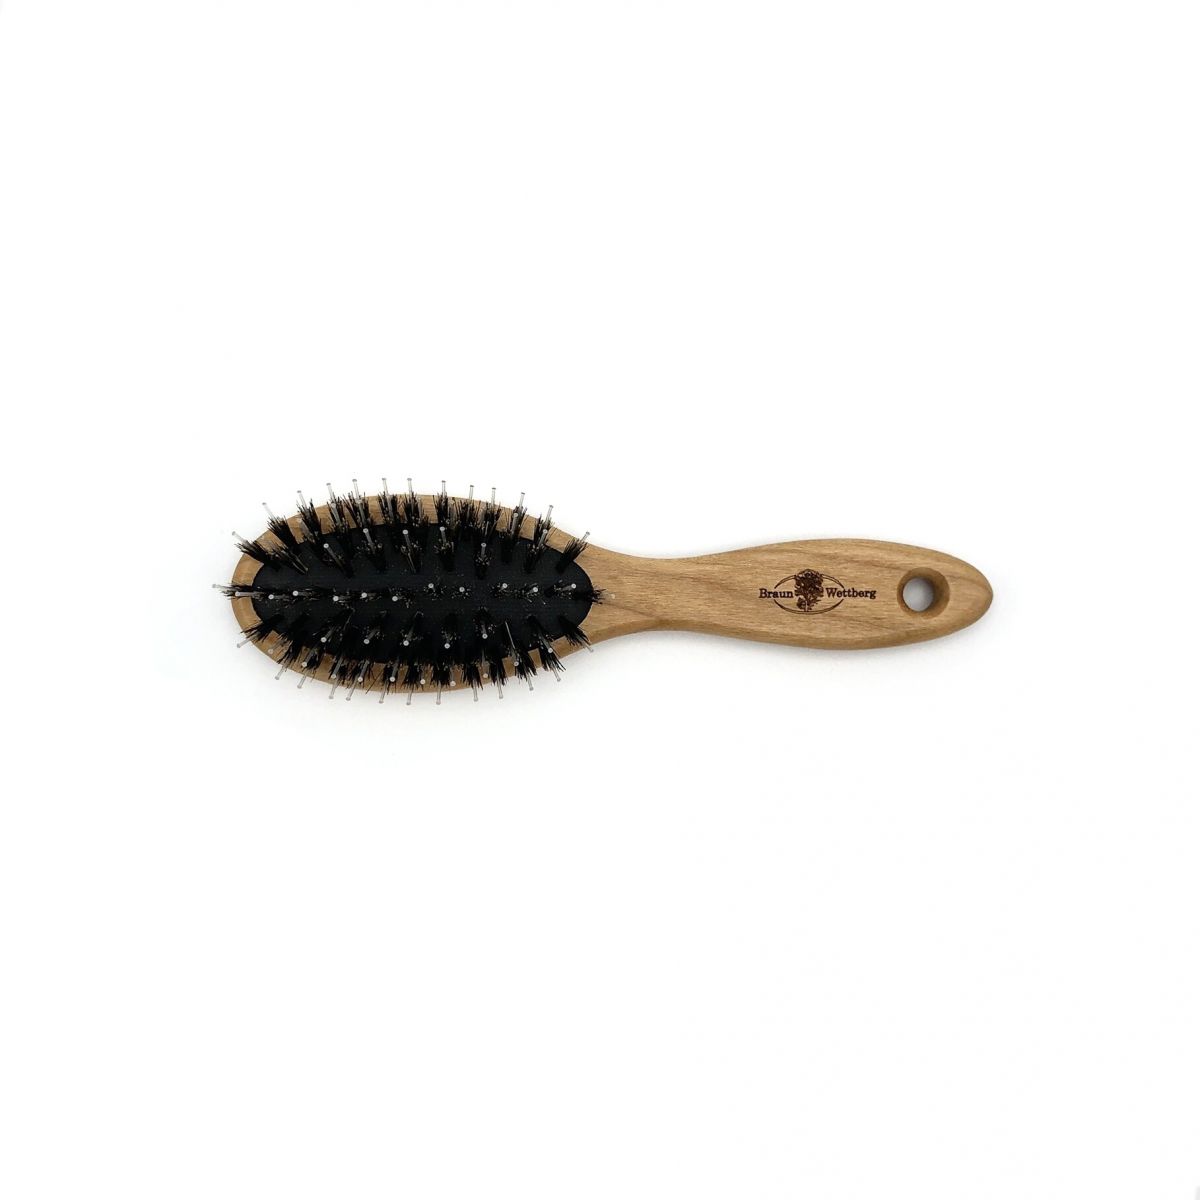 Haarbürste klein oval mit Borsten und Frisierpins